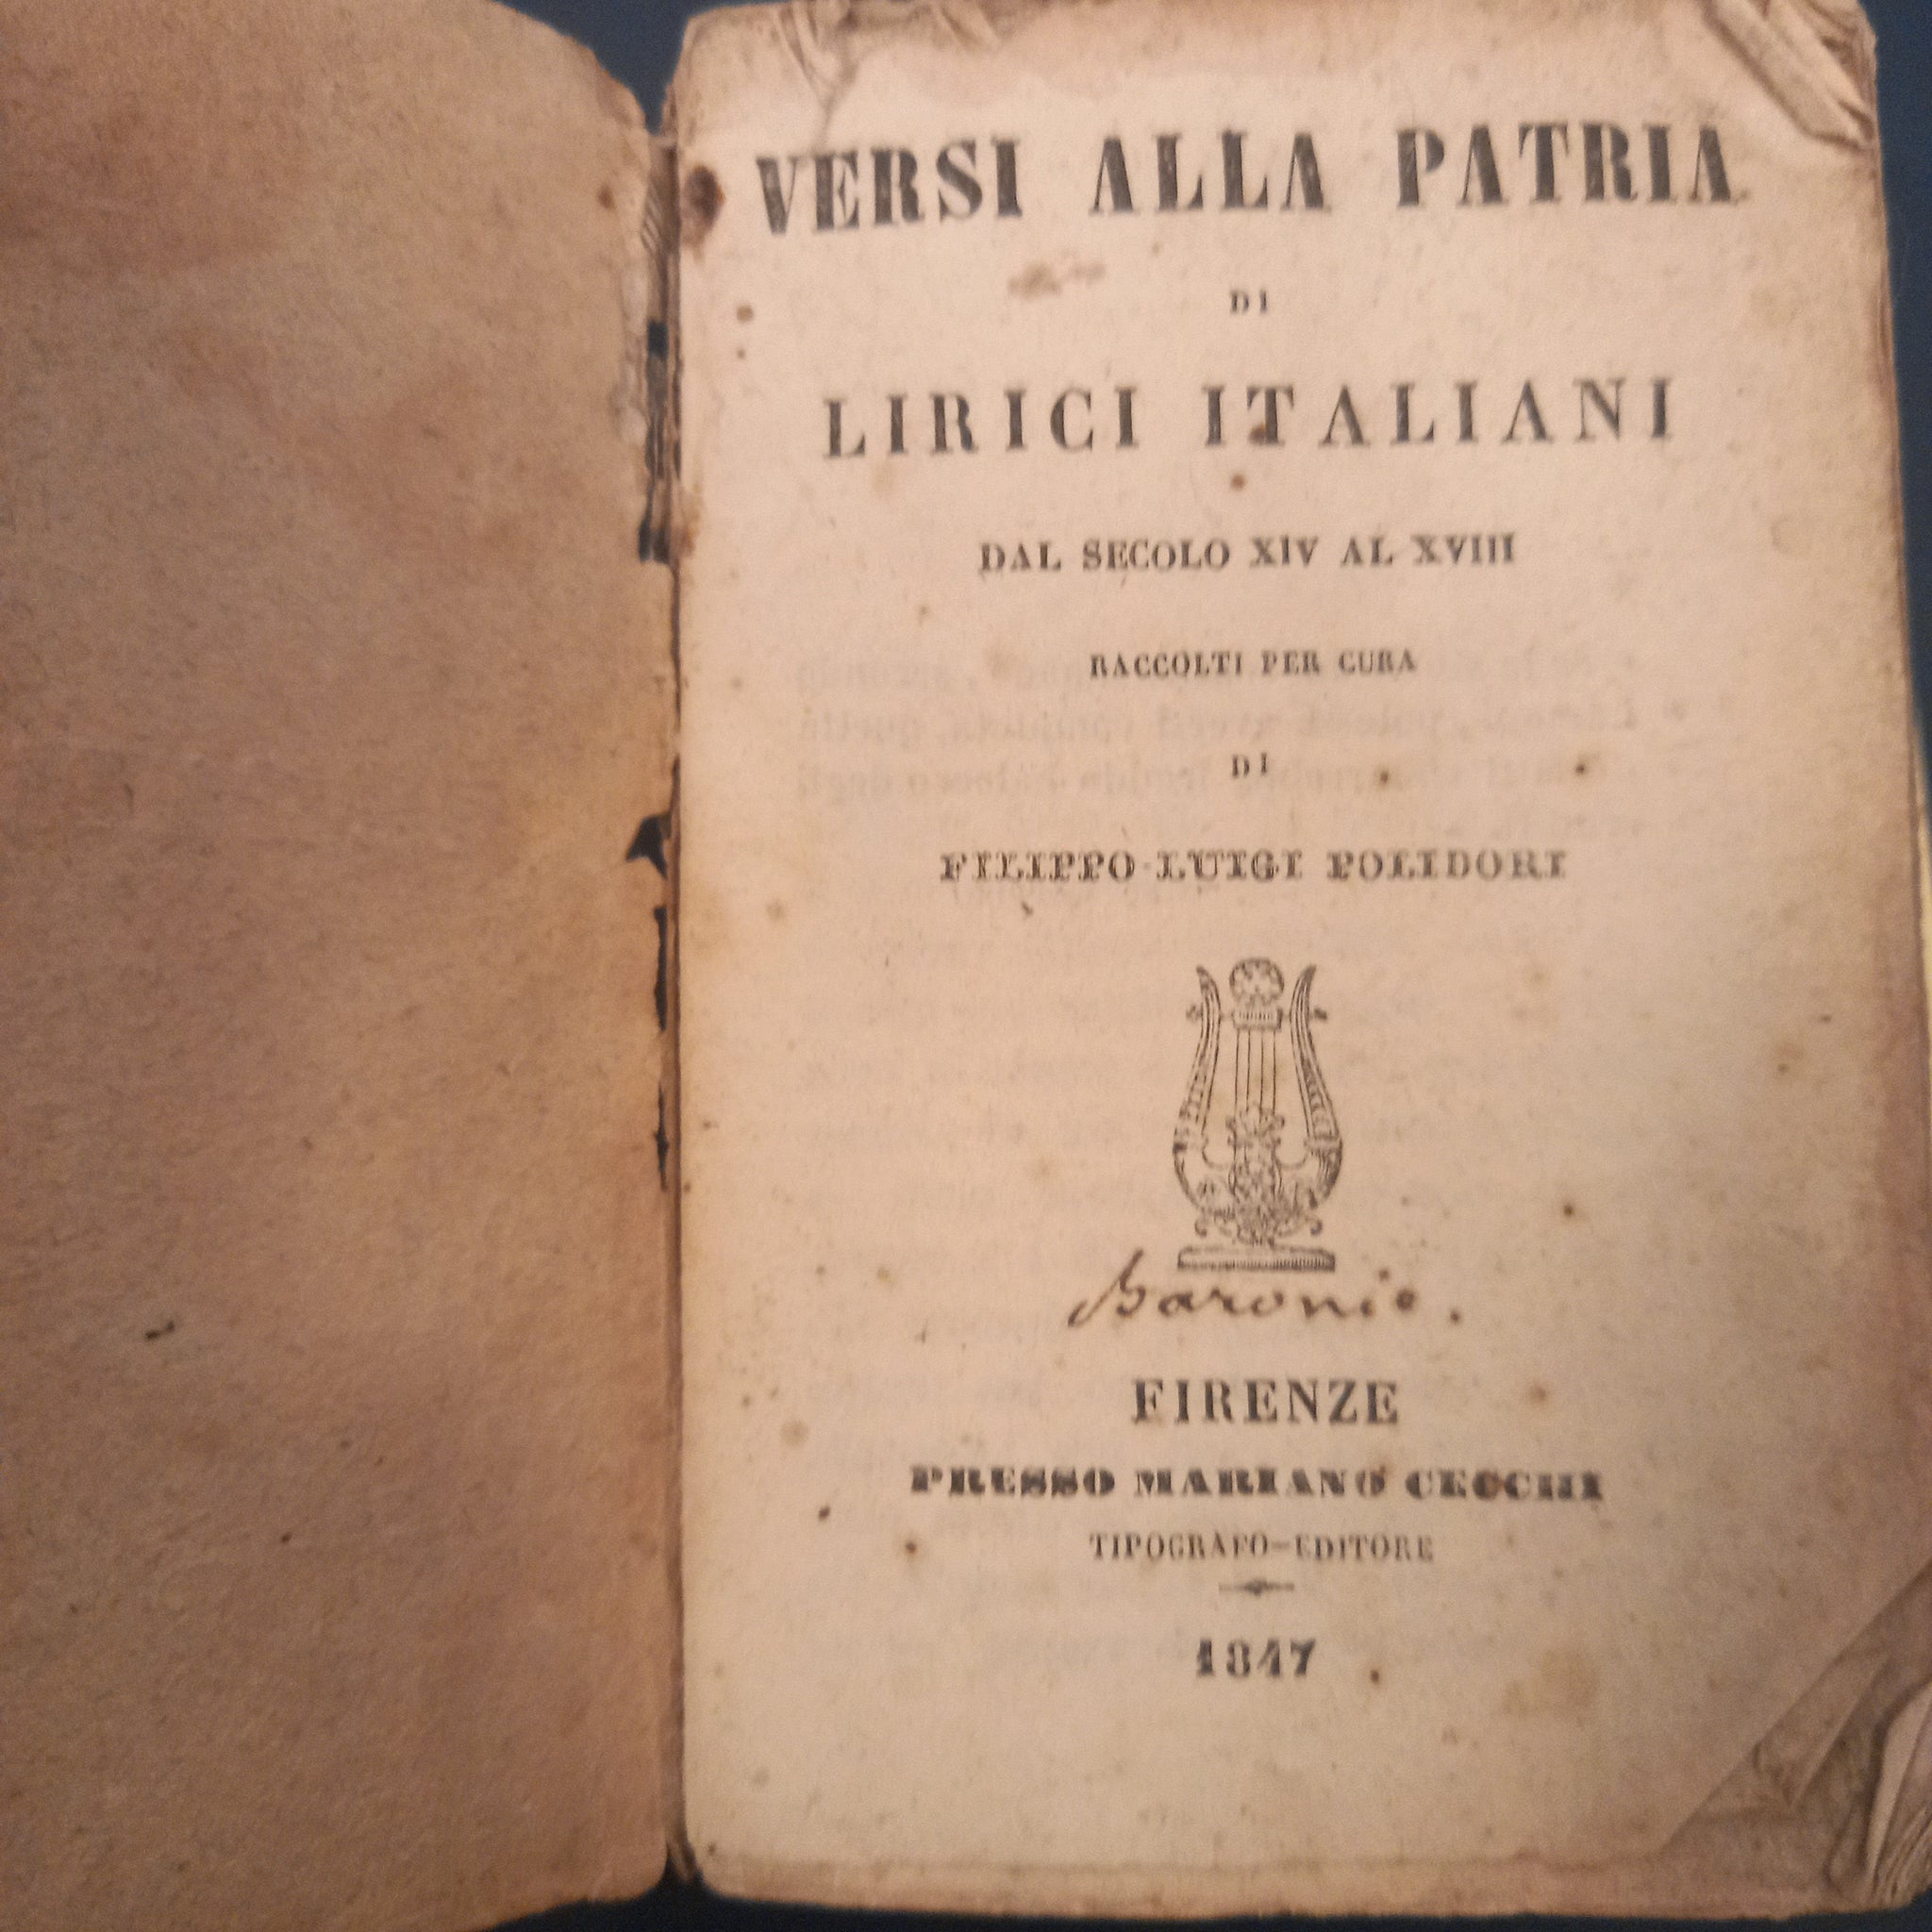 Versi alla patria di lirici italiani dal secolo XIV al secolo XVIII